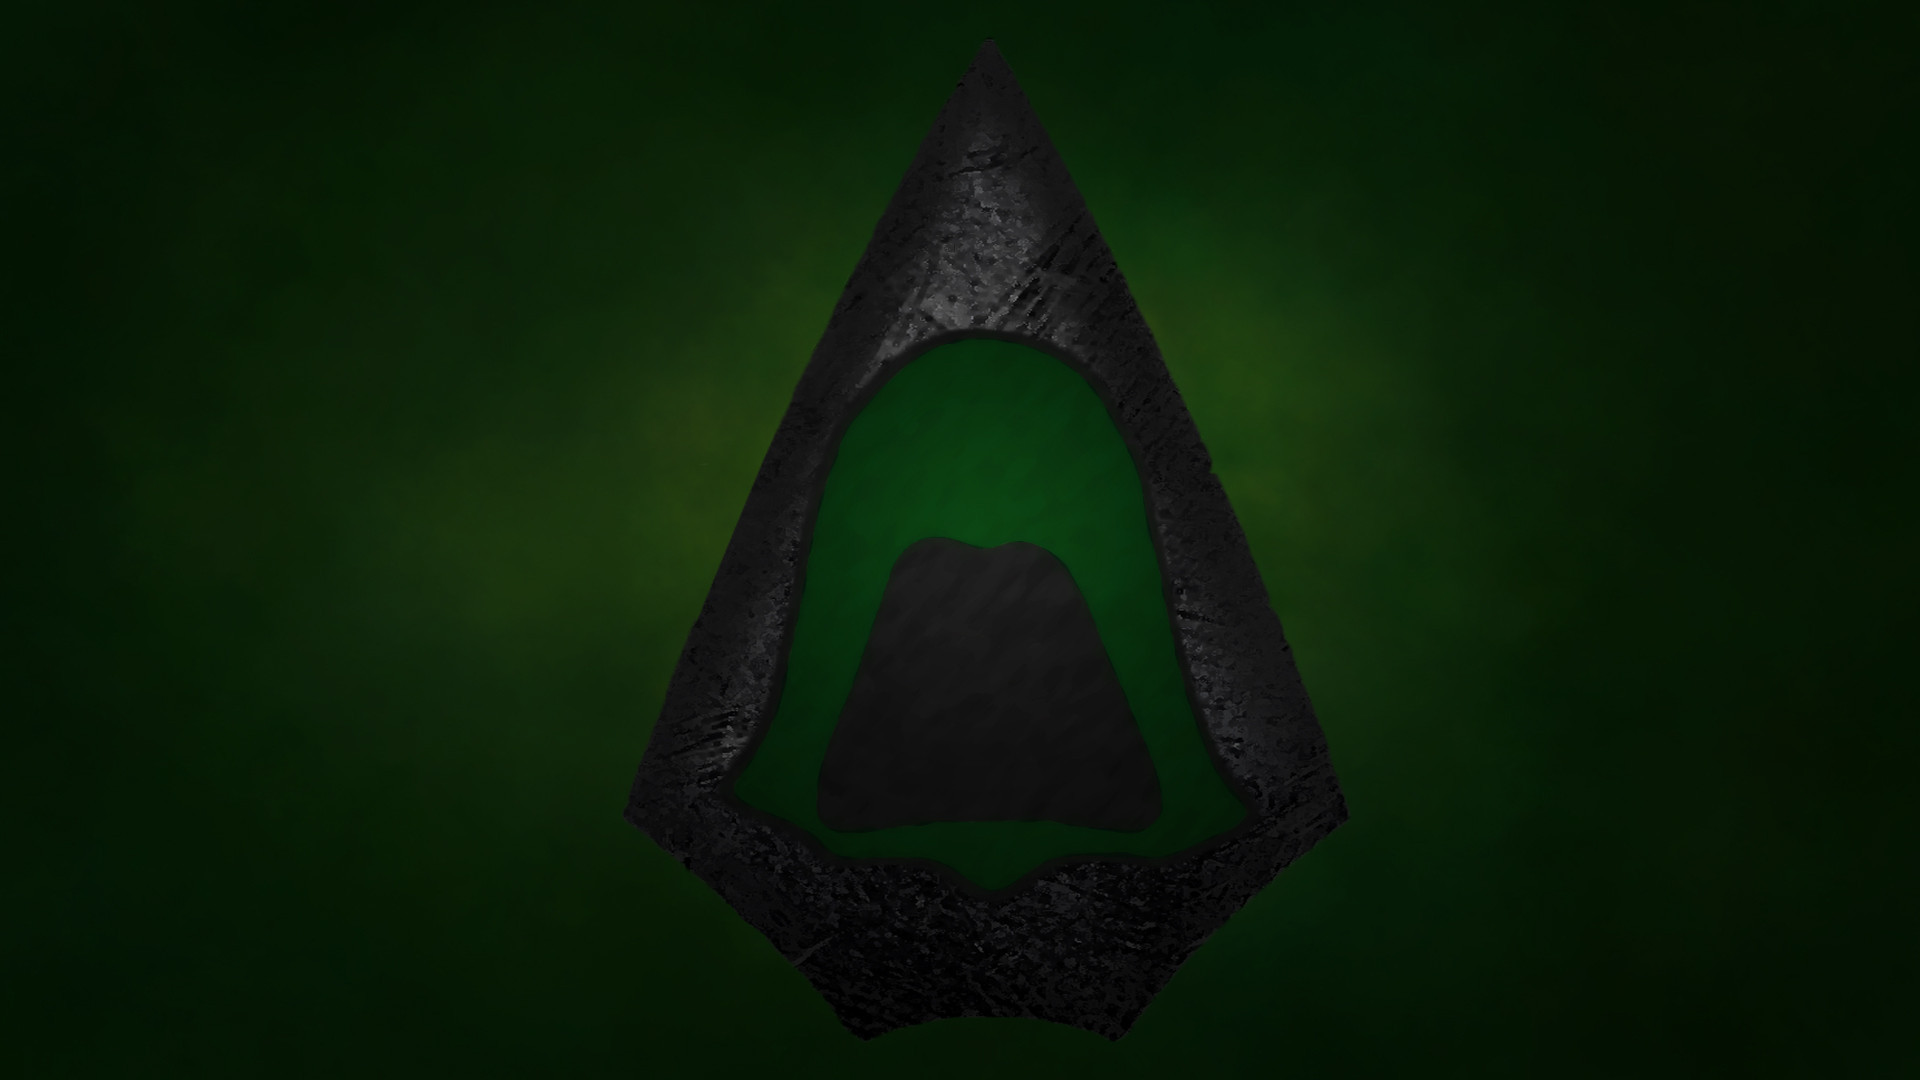 Green Arrow Wallpaper (Simplistic-ish) [1920Ã1080]